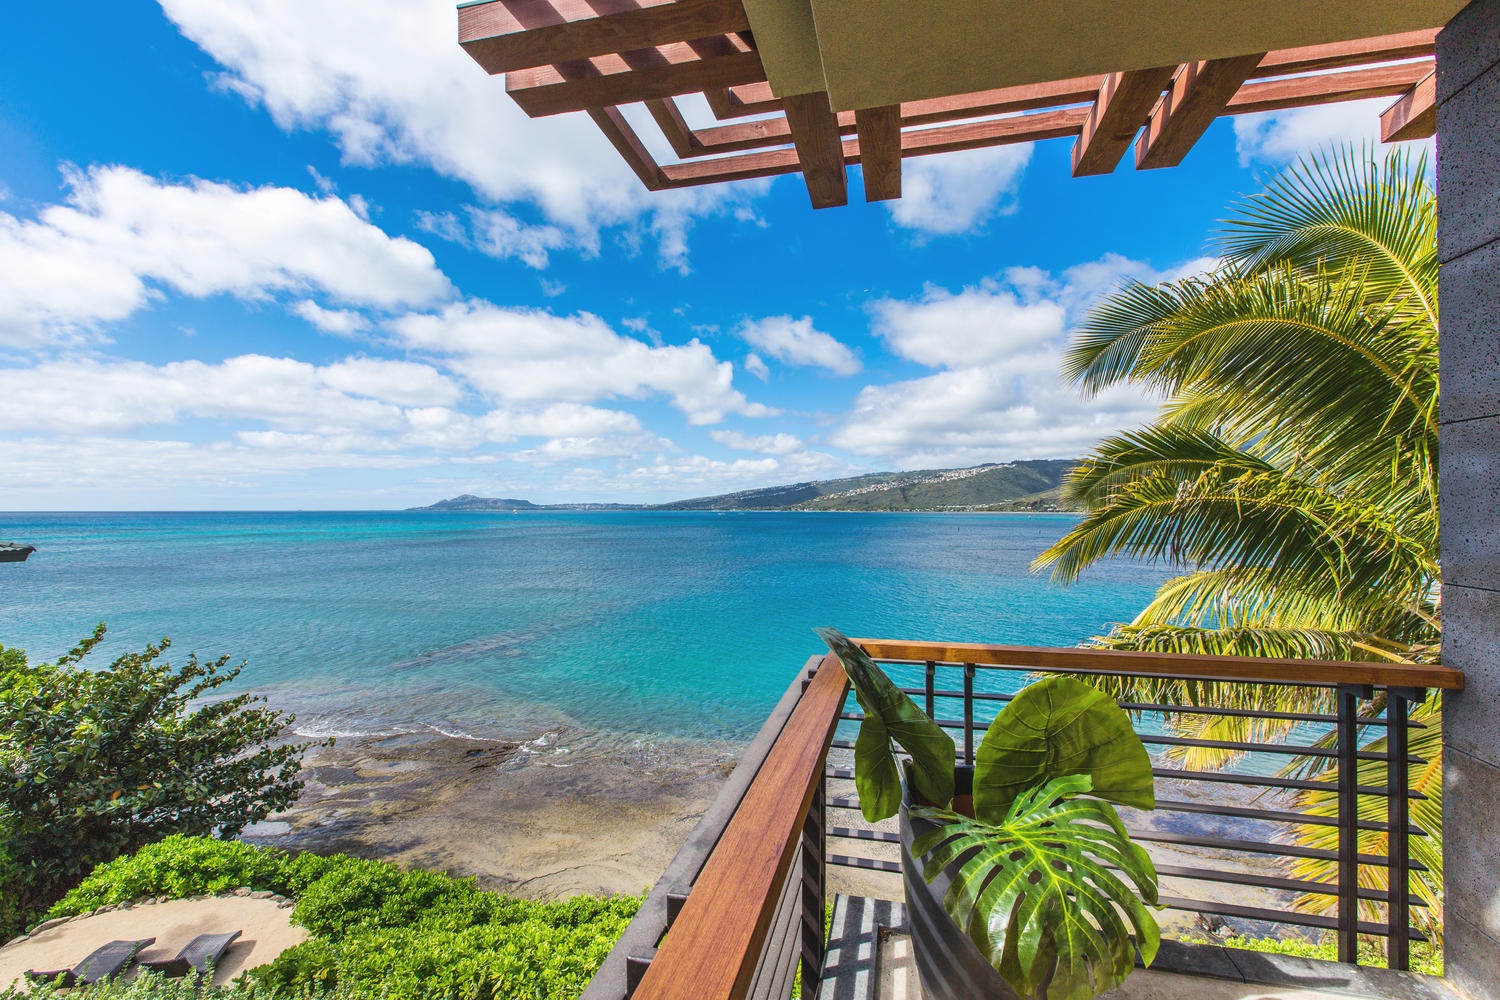 Honolulu Vacation Rentals, Ocean House - Primary bedroom lanai views.